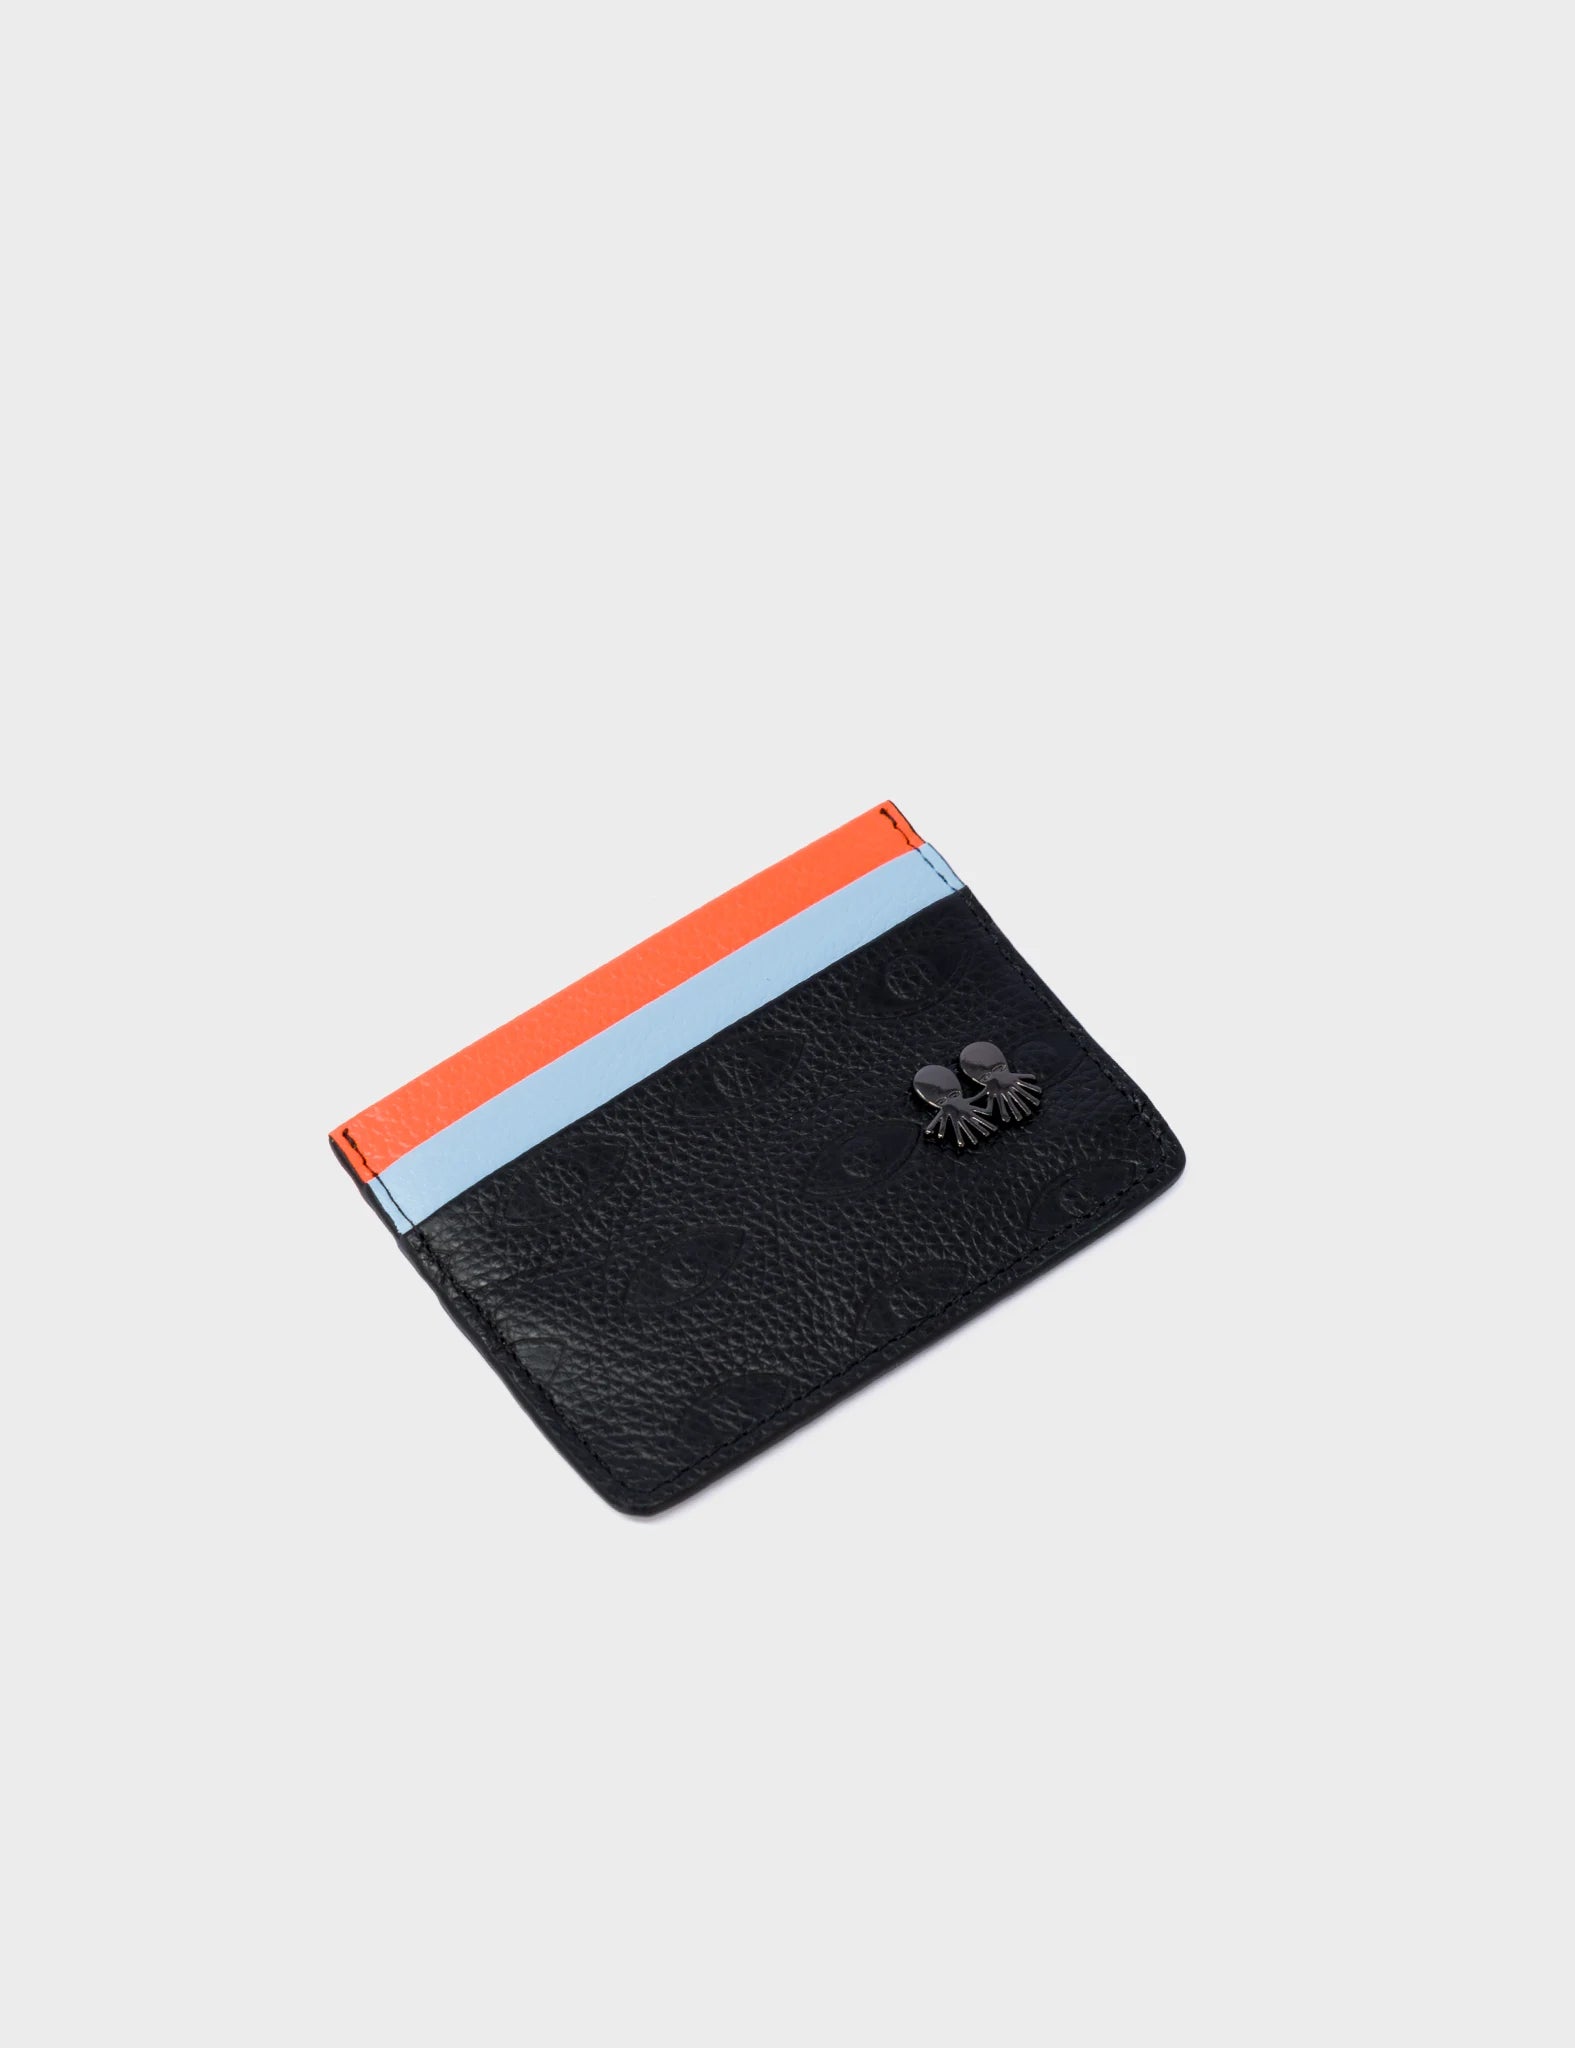 Filium Wallet Black And Neon Orange Leather Cardholder - Eyes Pattern Debossed - Side